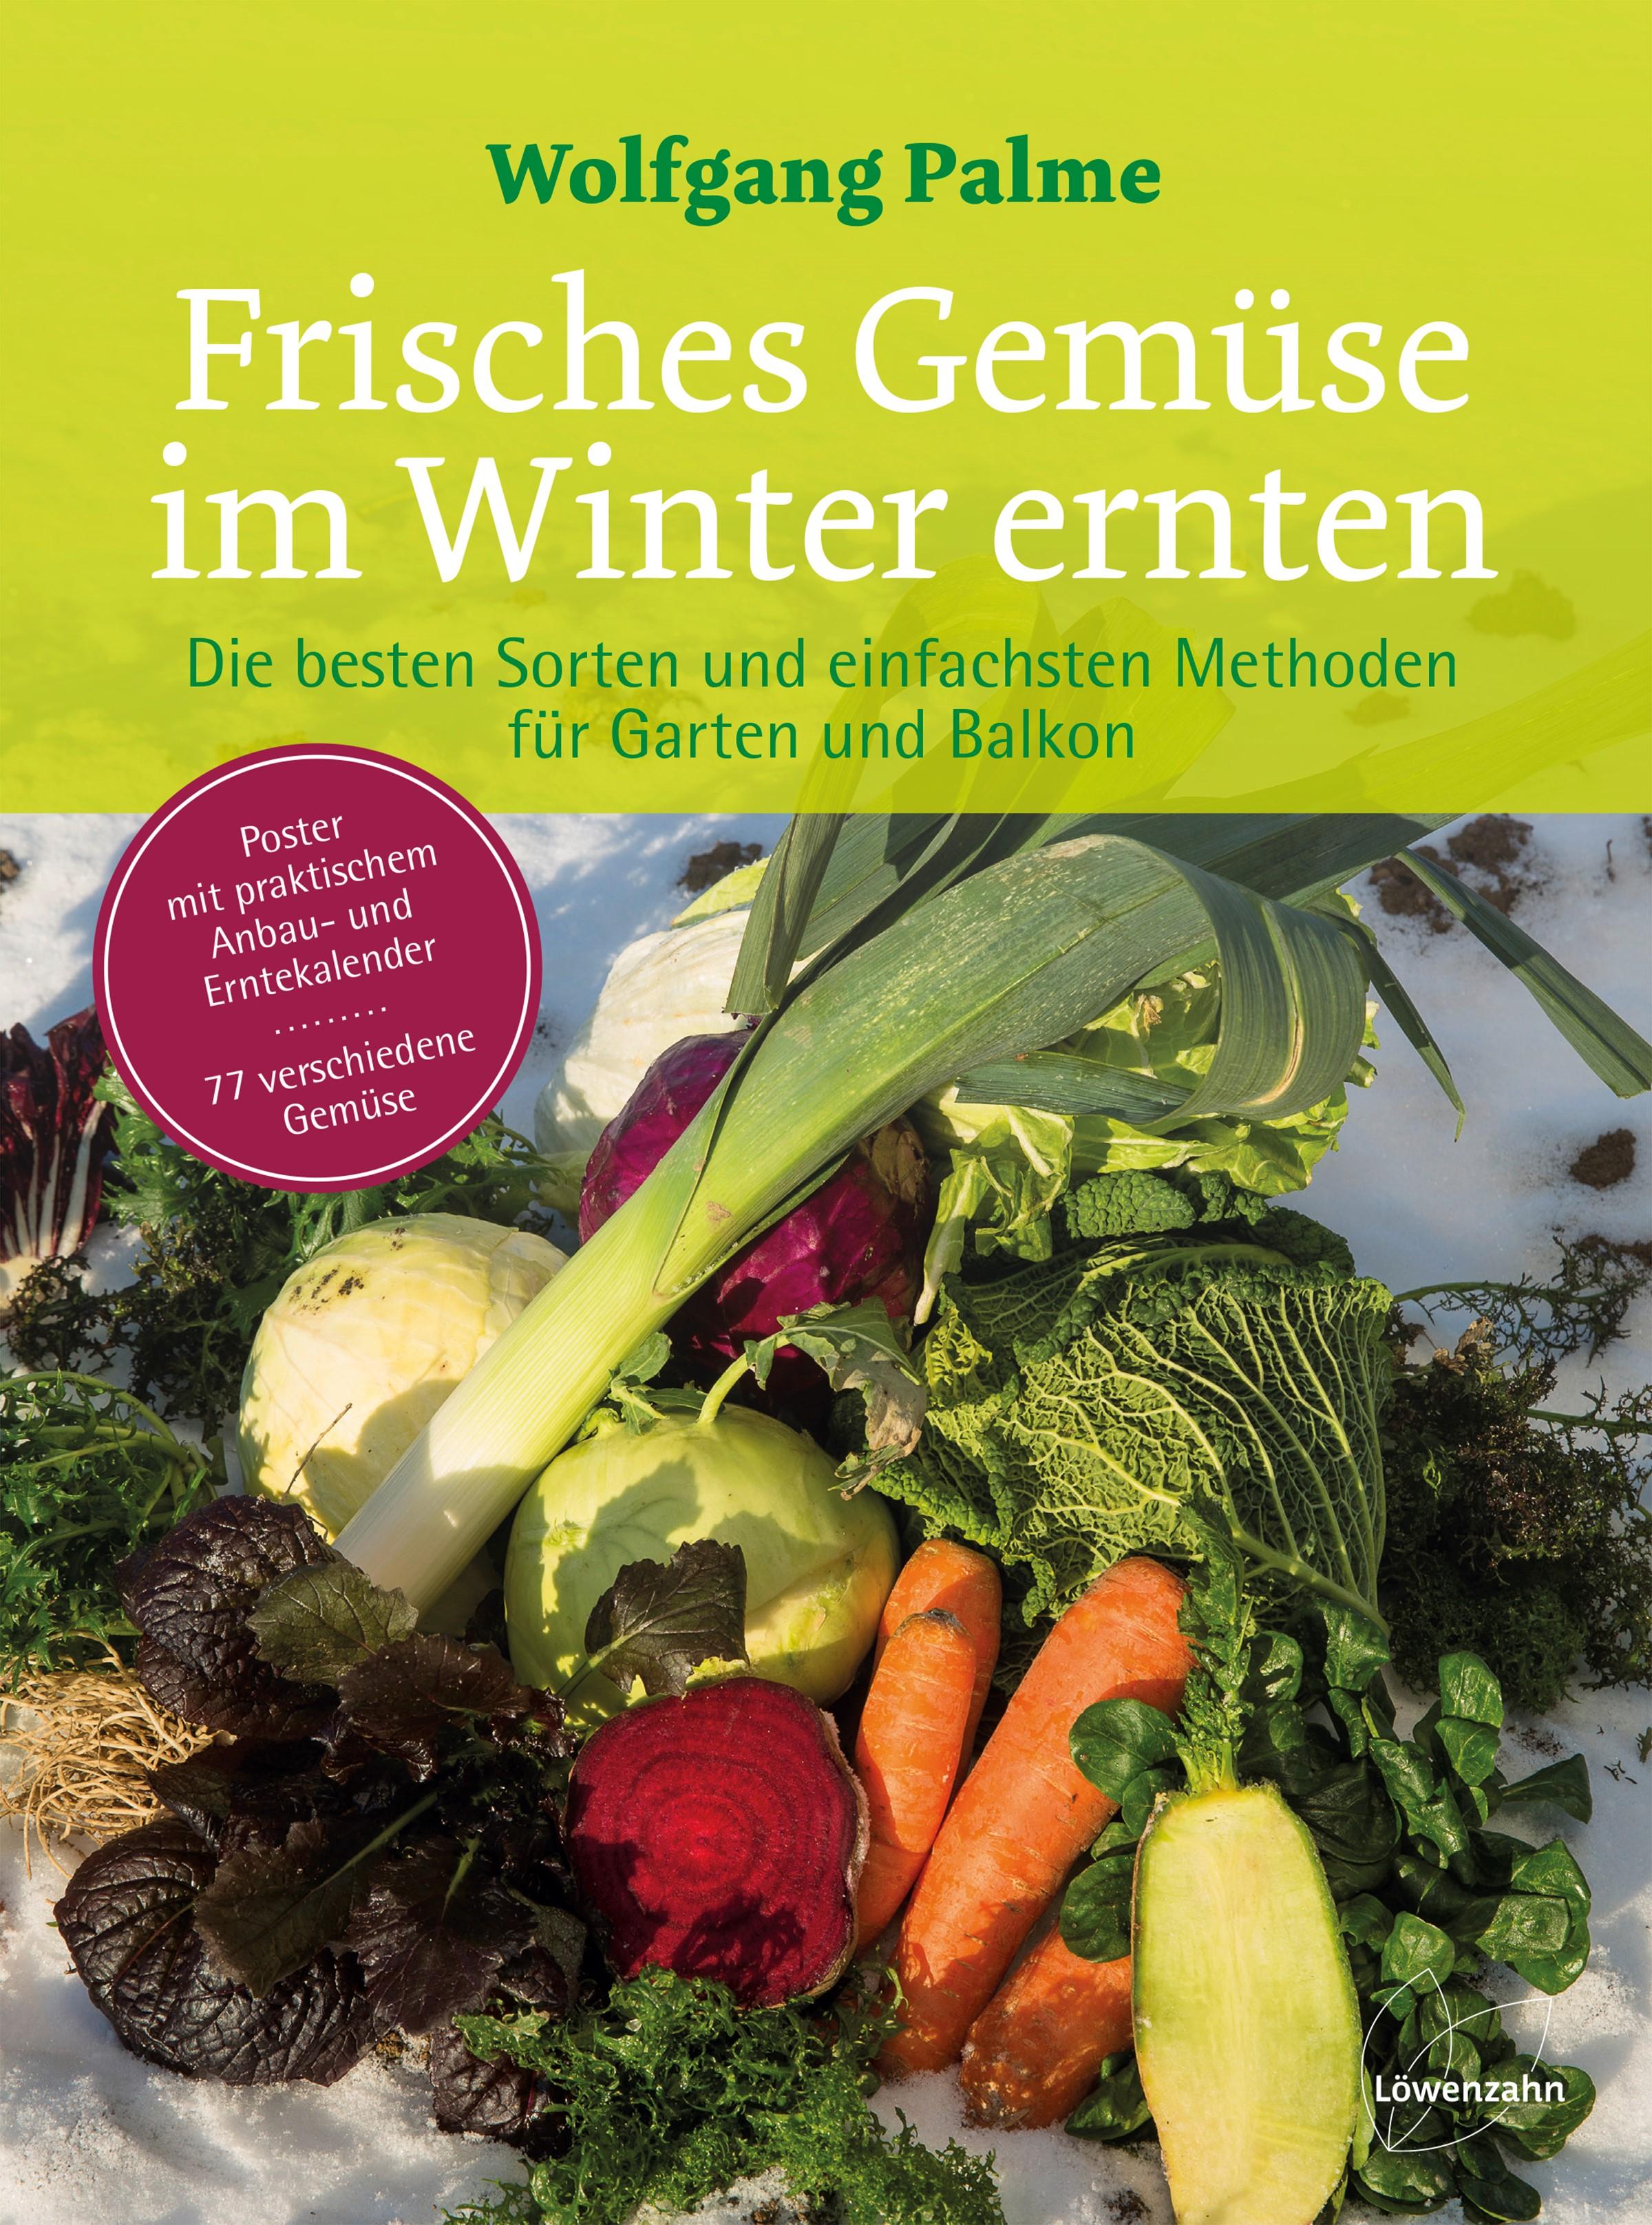 Frisches Gemüse im Winter ernten Die besten Sorten und einfachsten Methoden für Garten und Balkon. Poster mit praktischem Anbau- und Erntekalender. 77 verschiedene Gemüse